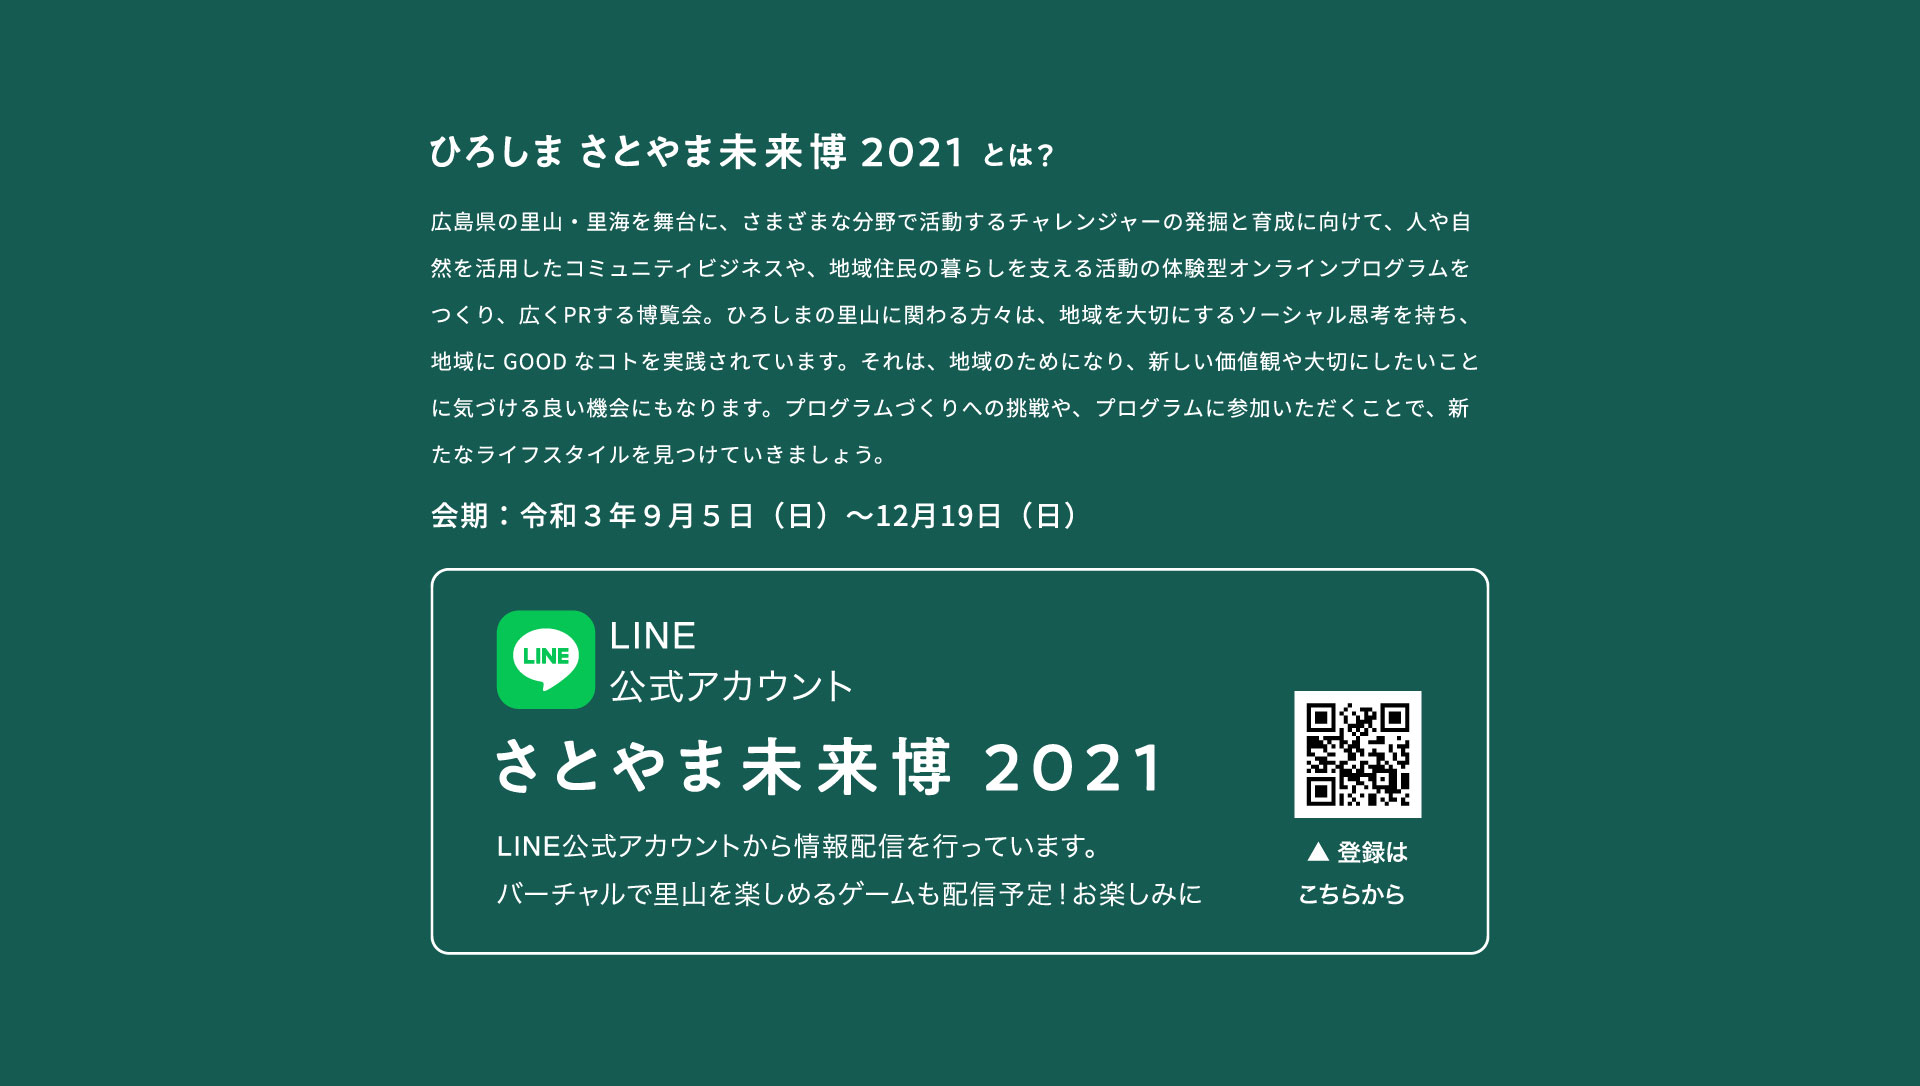 ひろしま さとやま未来博2021とは 広島県の里山・里海を舞台に、さまざまな分野で活動するチャレンジャーの発掘と育成に向けて、人や自然を活用したコミュニティビジネスや、地域住民の暮らしを支える活動の体験型オンラインプログラムをつくり、広くPRする博覧会。ひろしまの里山に関わる方々は、地域を大切にするソーシャル思考を持ち、地域に GOOD なコトを実践されています。それは、地域のためになり、新しい価値観や大切にしたいことに気づける良い機会にもなります。プログラムづくりへの挑戦や、プログラムに参加いただくことで、新たなライフスタイルを見つけていきましょう。